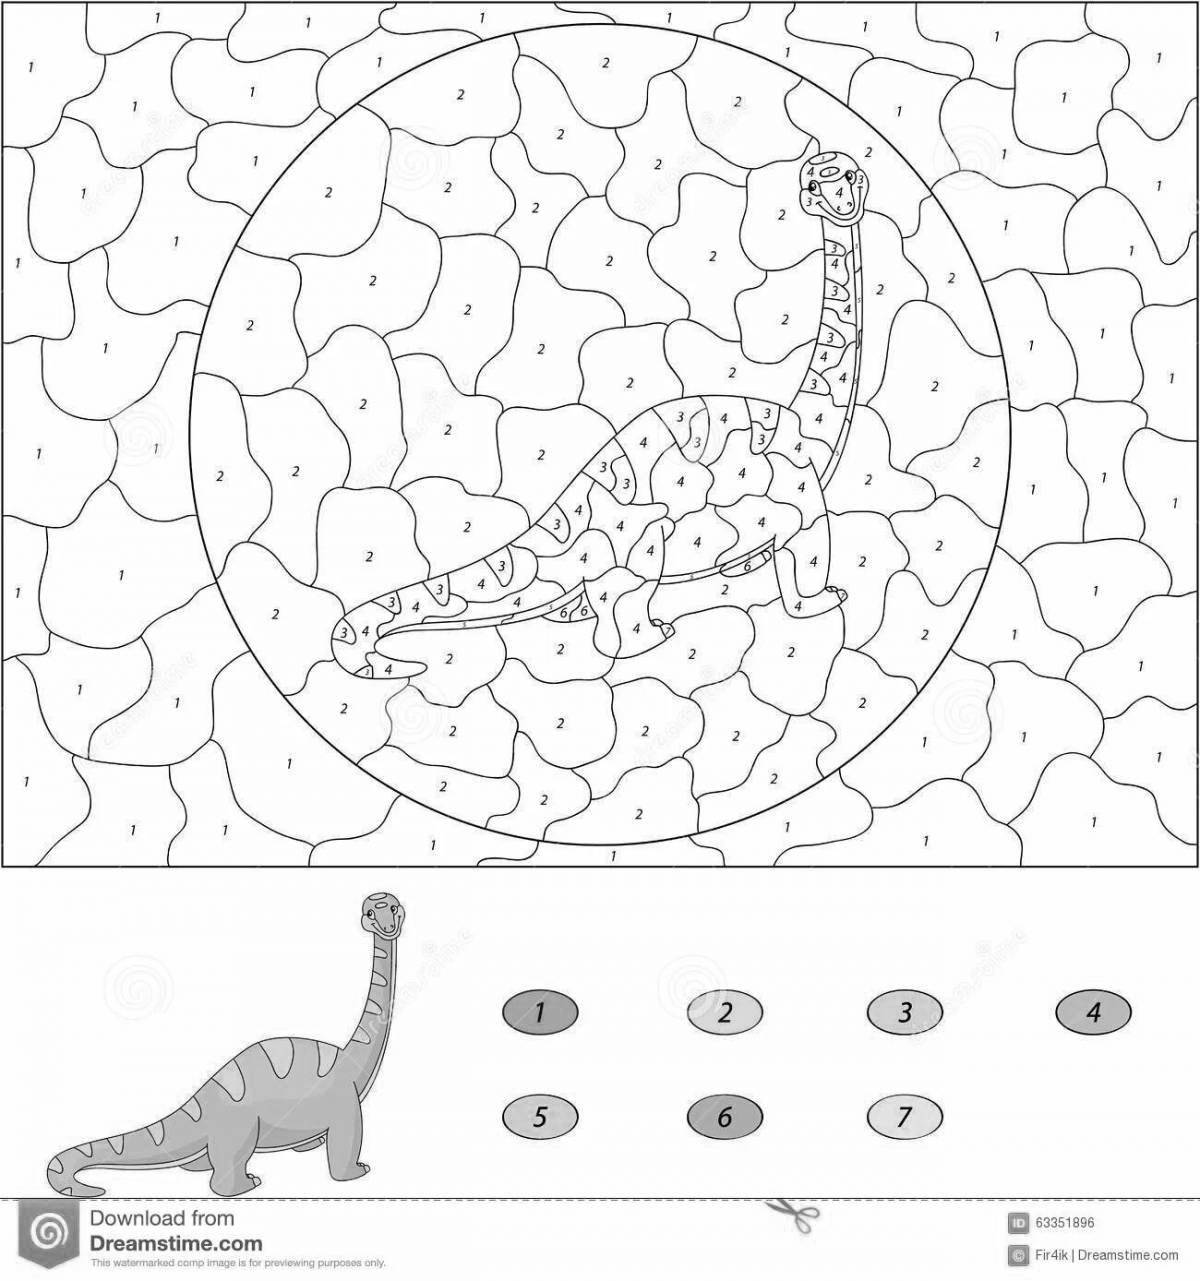 Изысканная раскраска динозавры по номерам